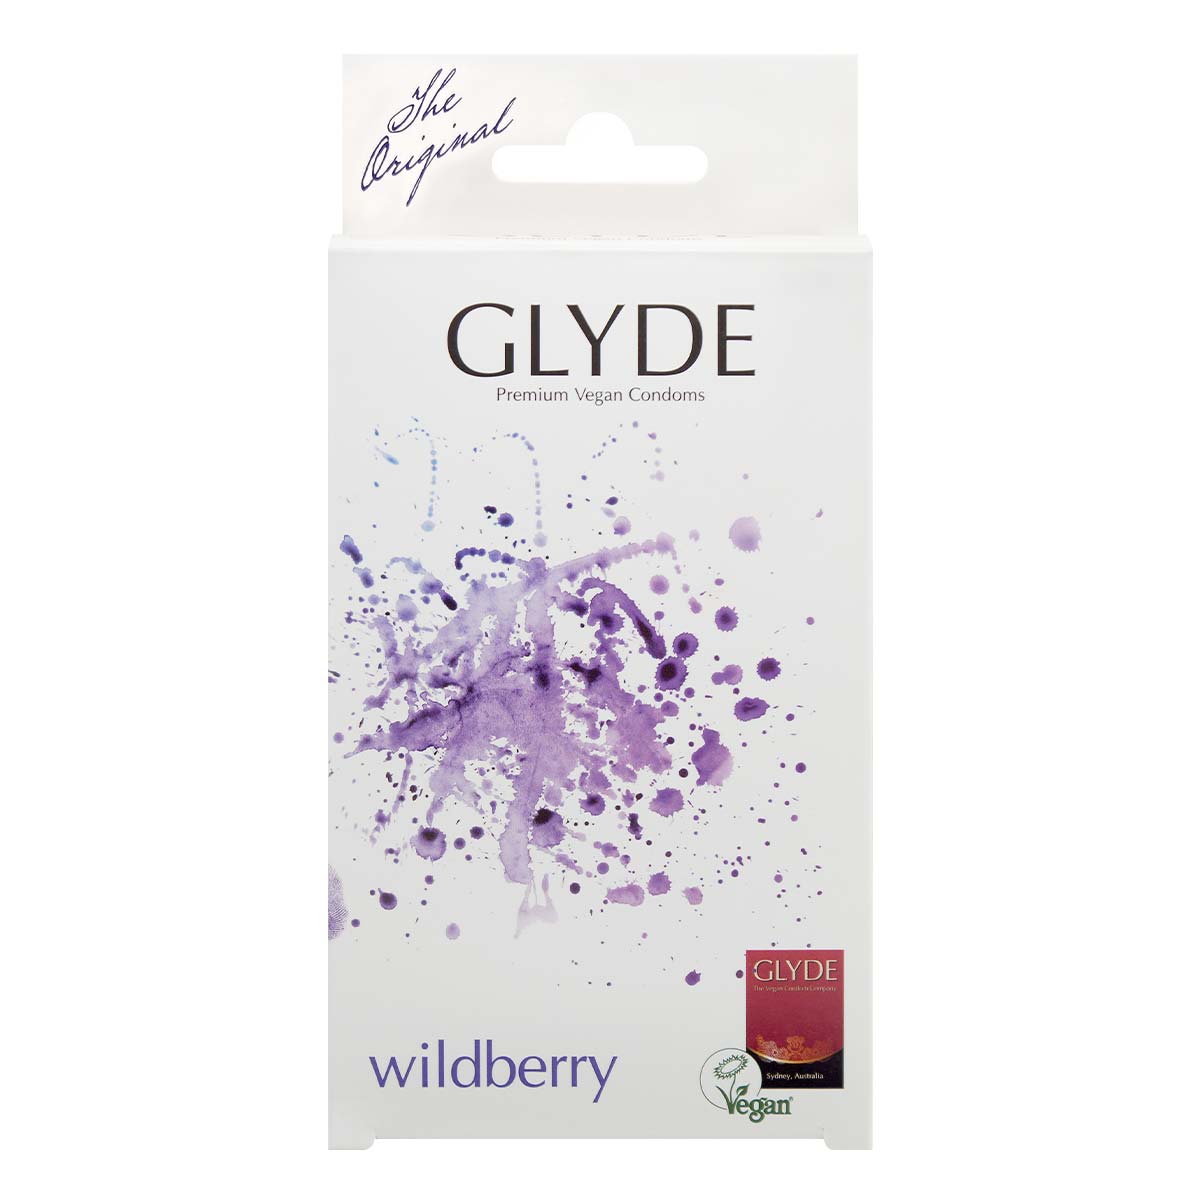 Glyde 格蕾迪 素食主义安全套 野莓香 10 片装 乳胶安全套-p_2